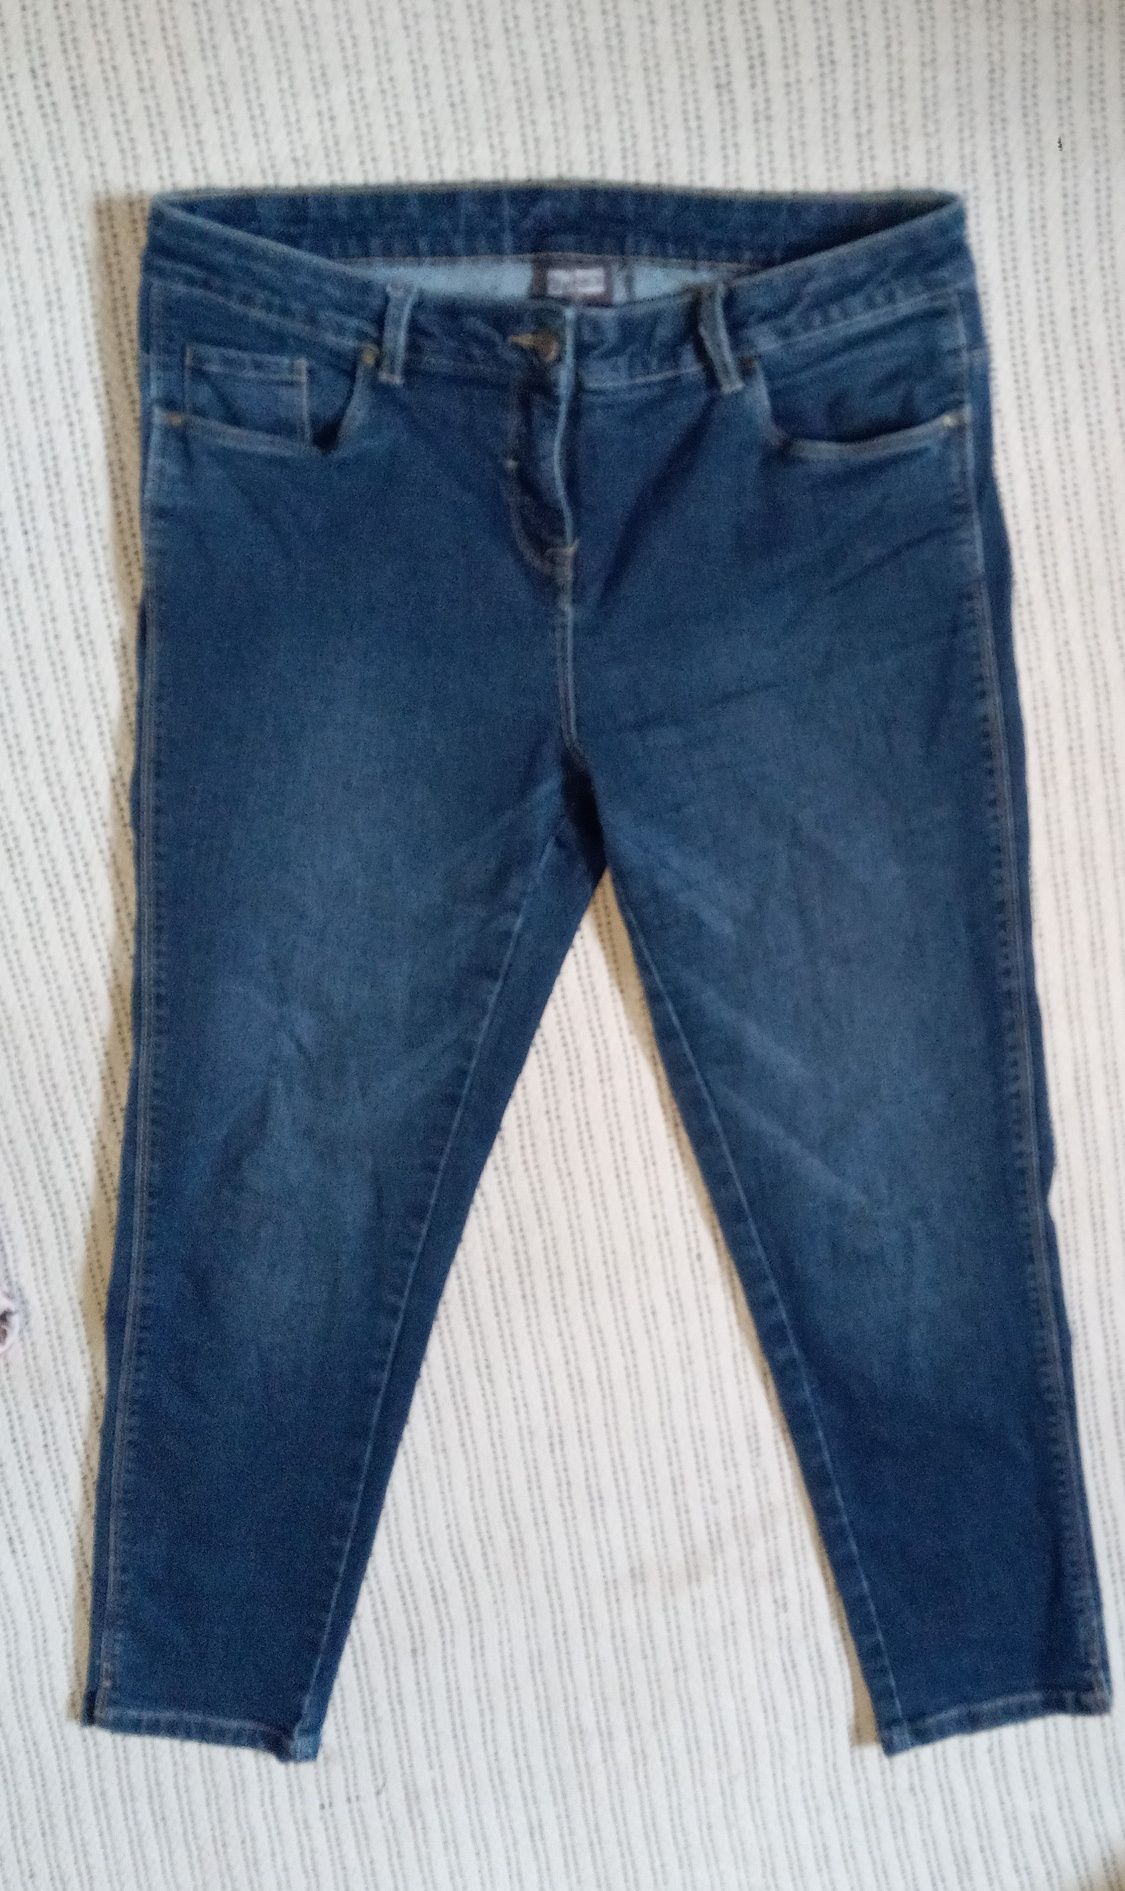 Женские укороченные джинсы-скинни-50-52 размер